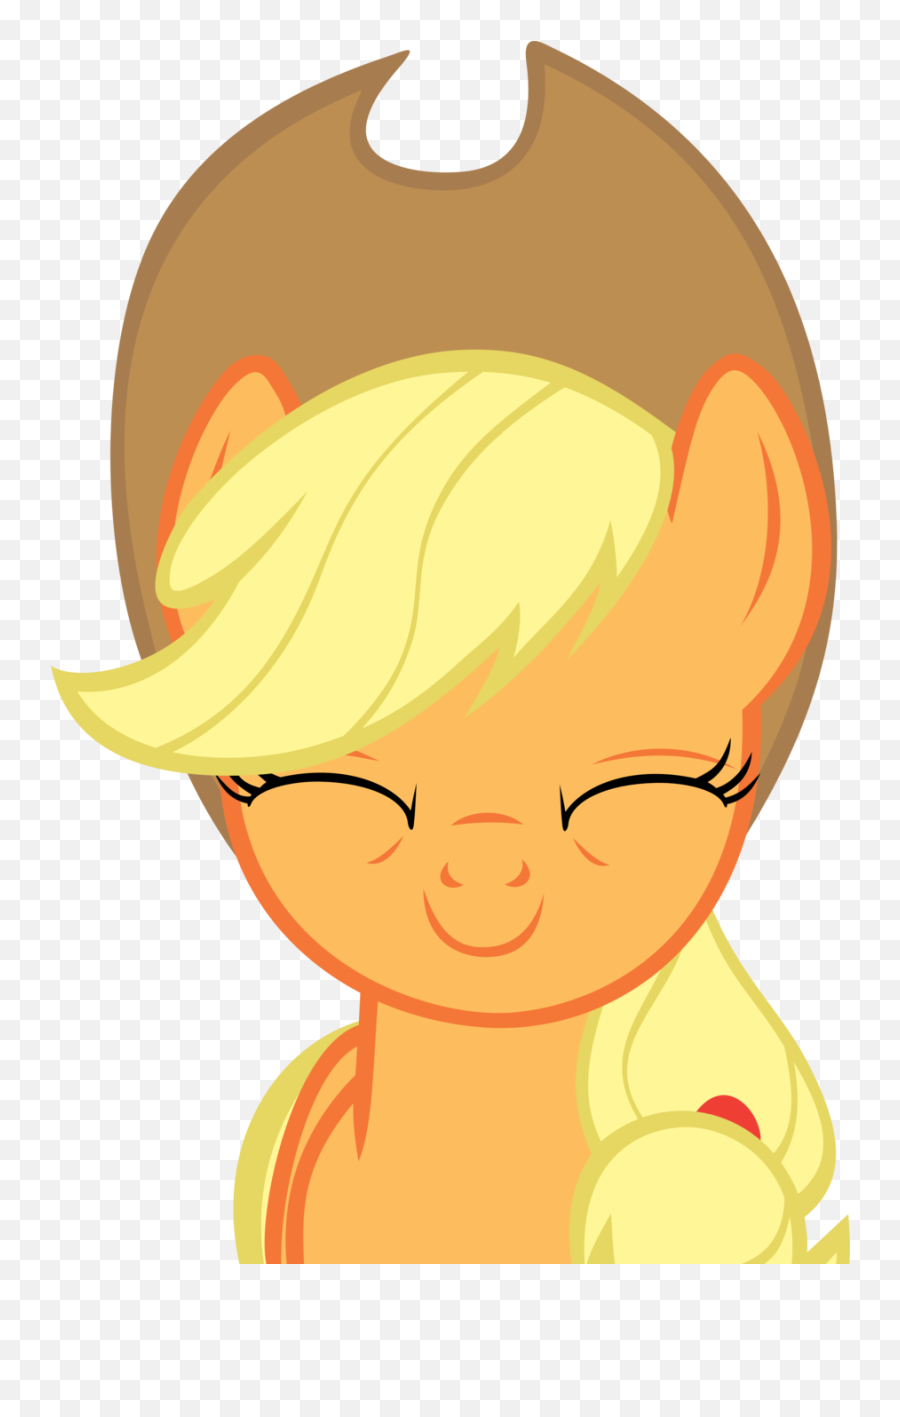 Applejack Vs Apple Jacks - My Little Pony Apple Jack Head Emoji,Emoji Honey Nut Cheerios